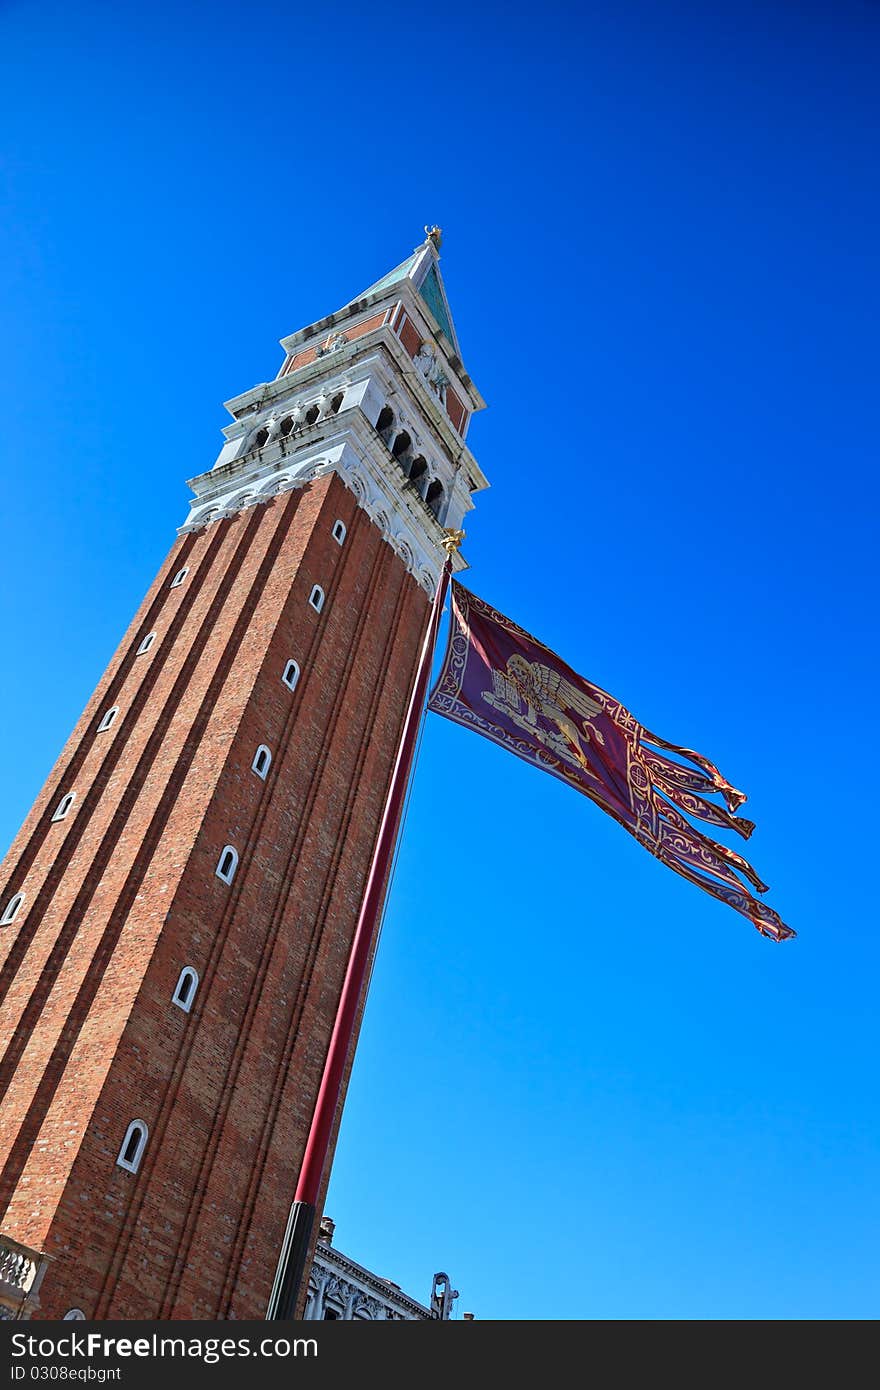 Campanile and Venetian flag against clear, blue sky. Venice, Italy.